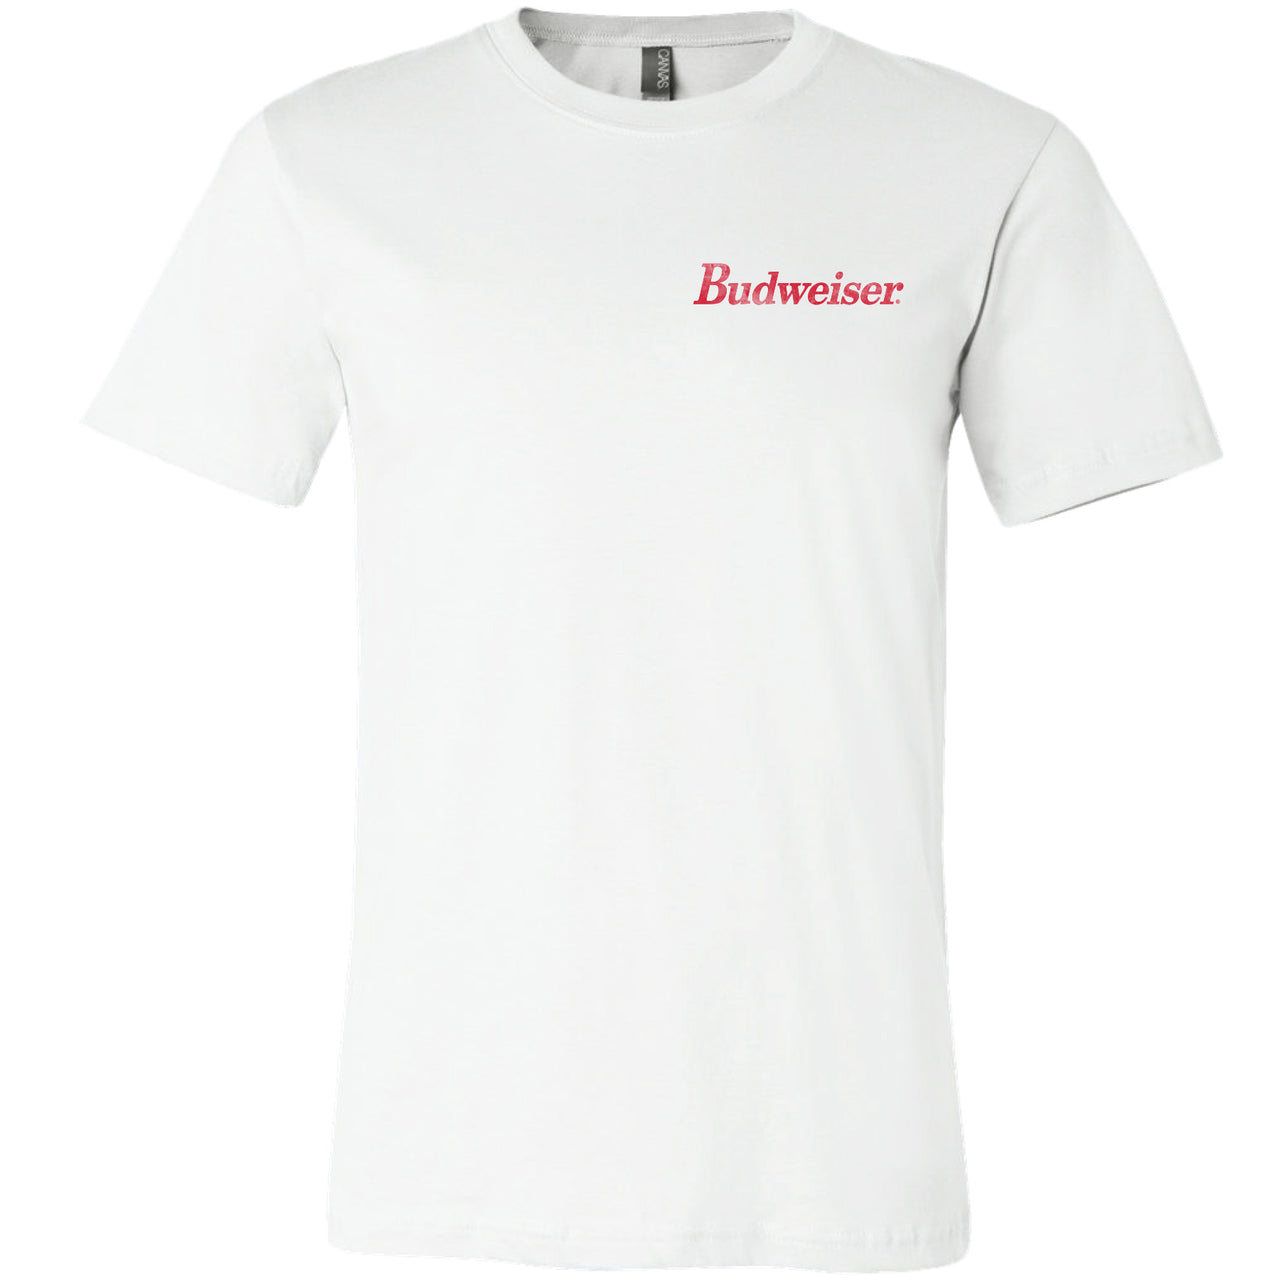 Budweiser - Six Pack 2-Sided T-Shirt